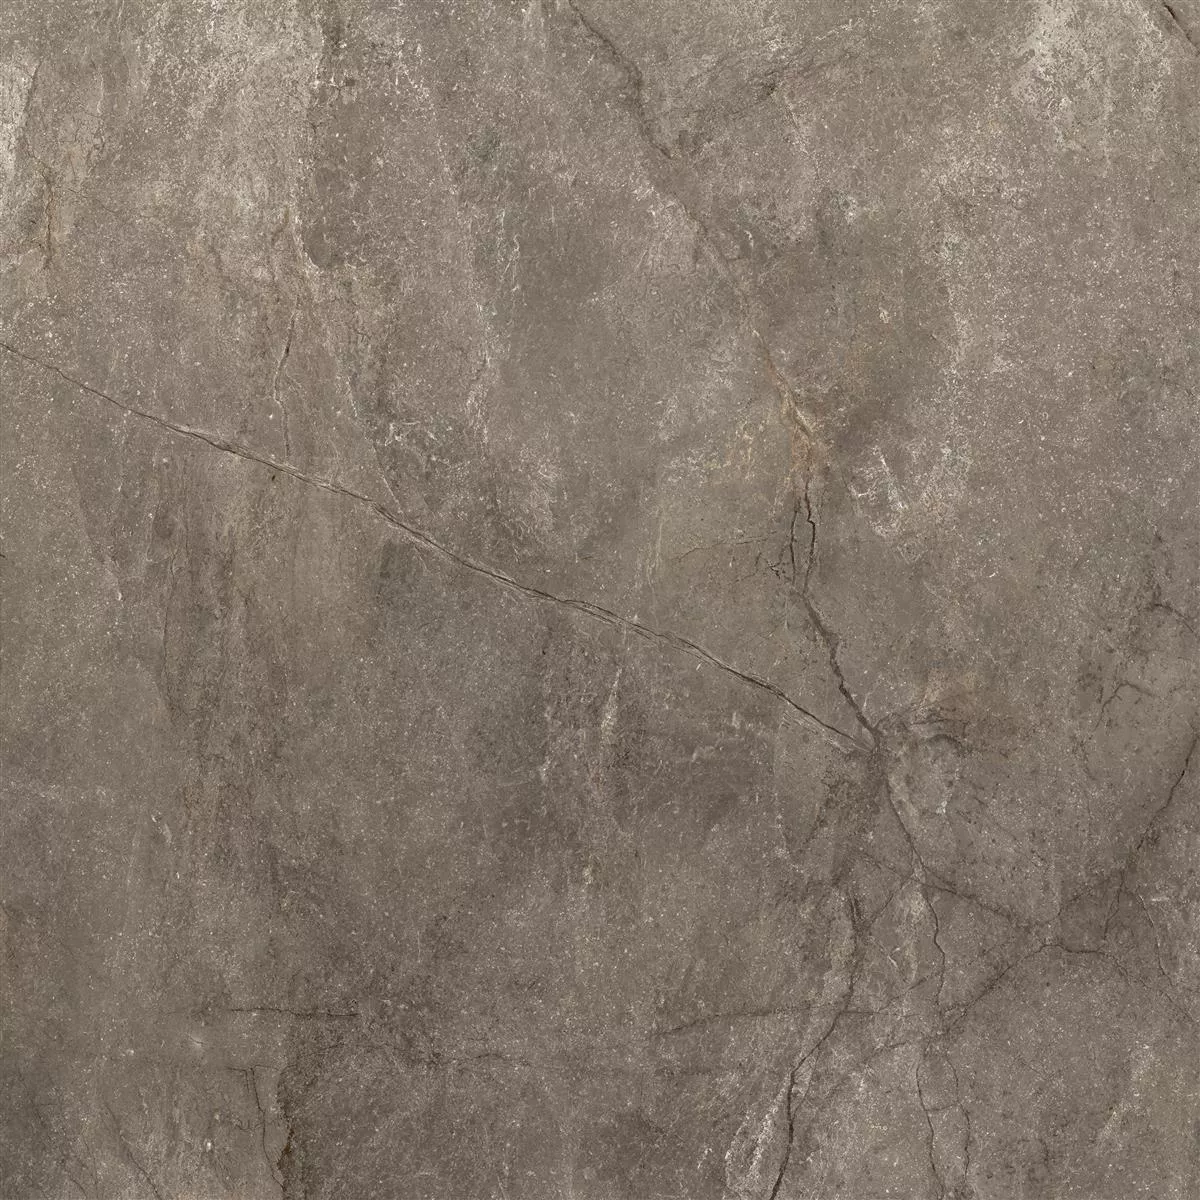 Πλακάκια Δαπέδου Pangea Μαρμάρινη Όψη Αμεμπτος Mokka 120x120cm